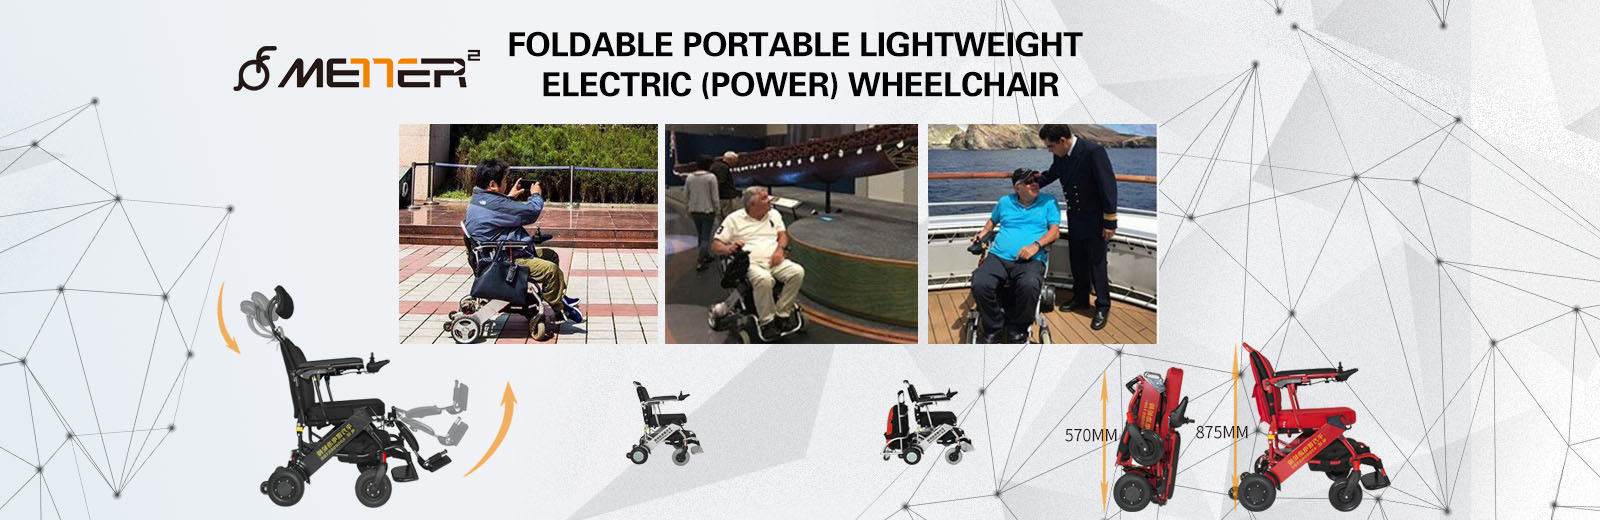 Κλασική πτυσσόμενη ηλεκτρική αναπηρική καρέκλα